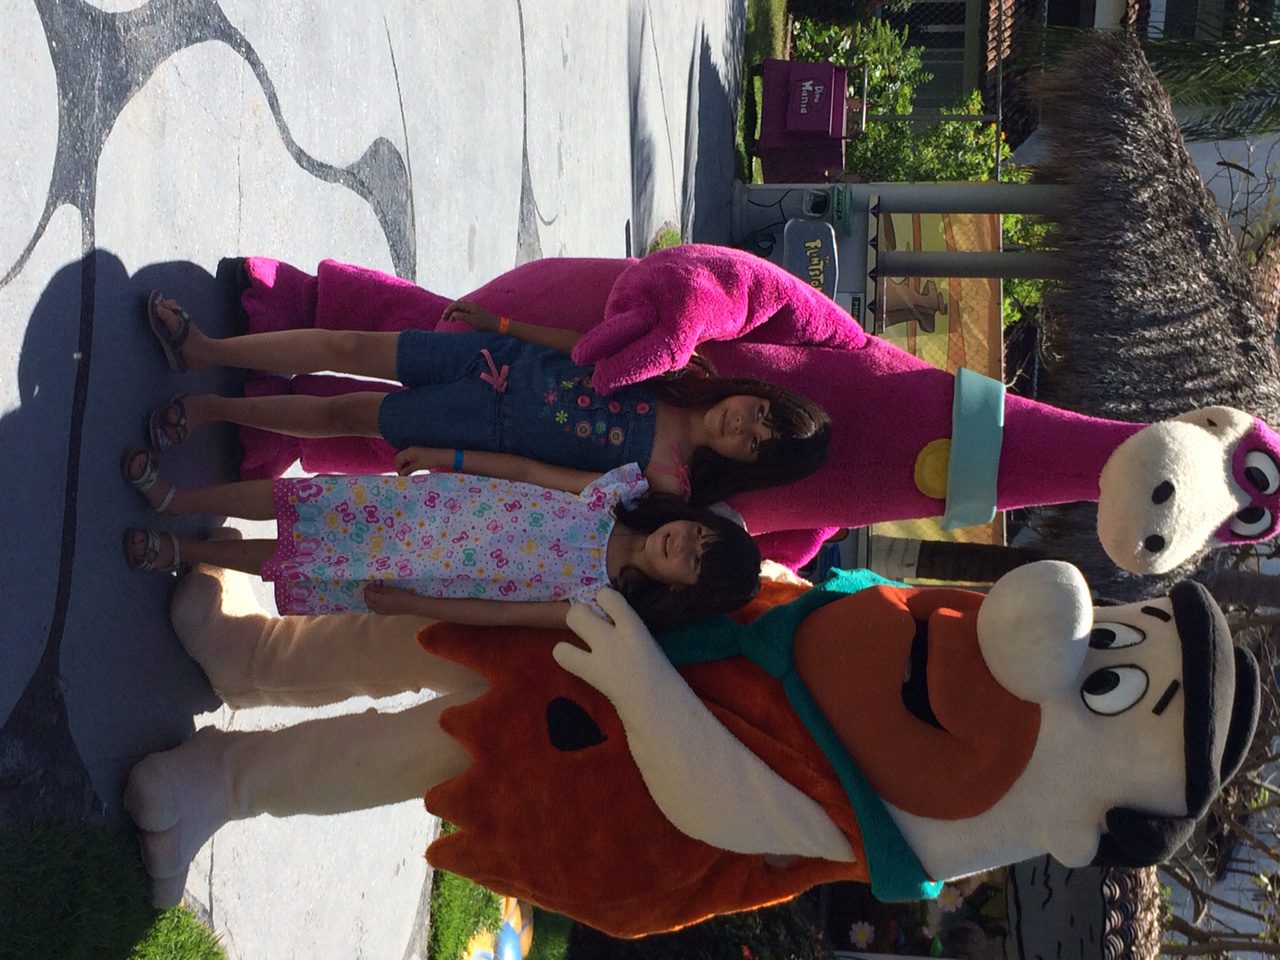 Meeting the Flintstones at the Melia resort in Puerto Vallarta